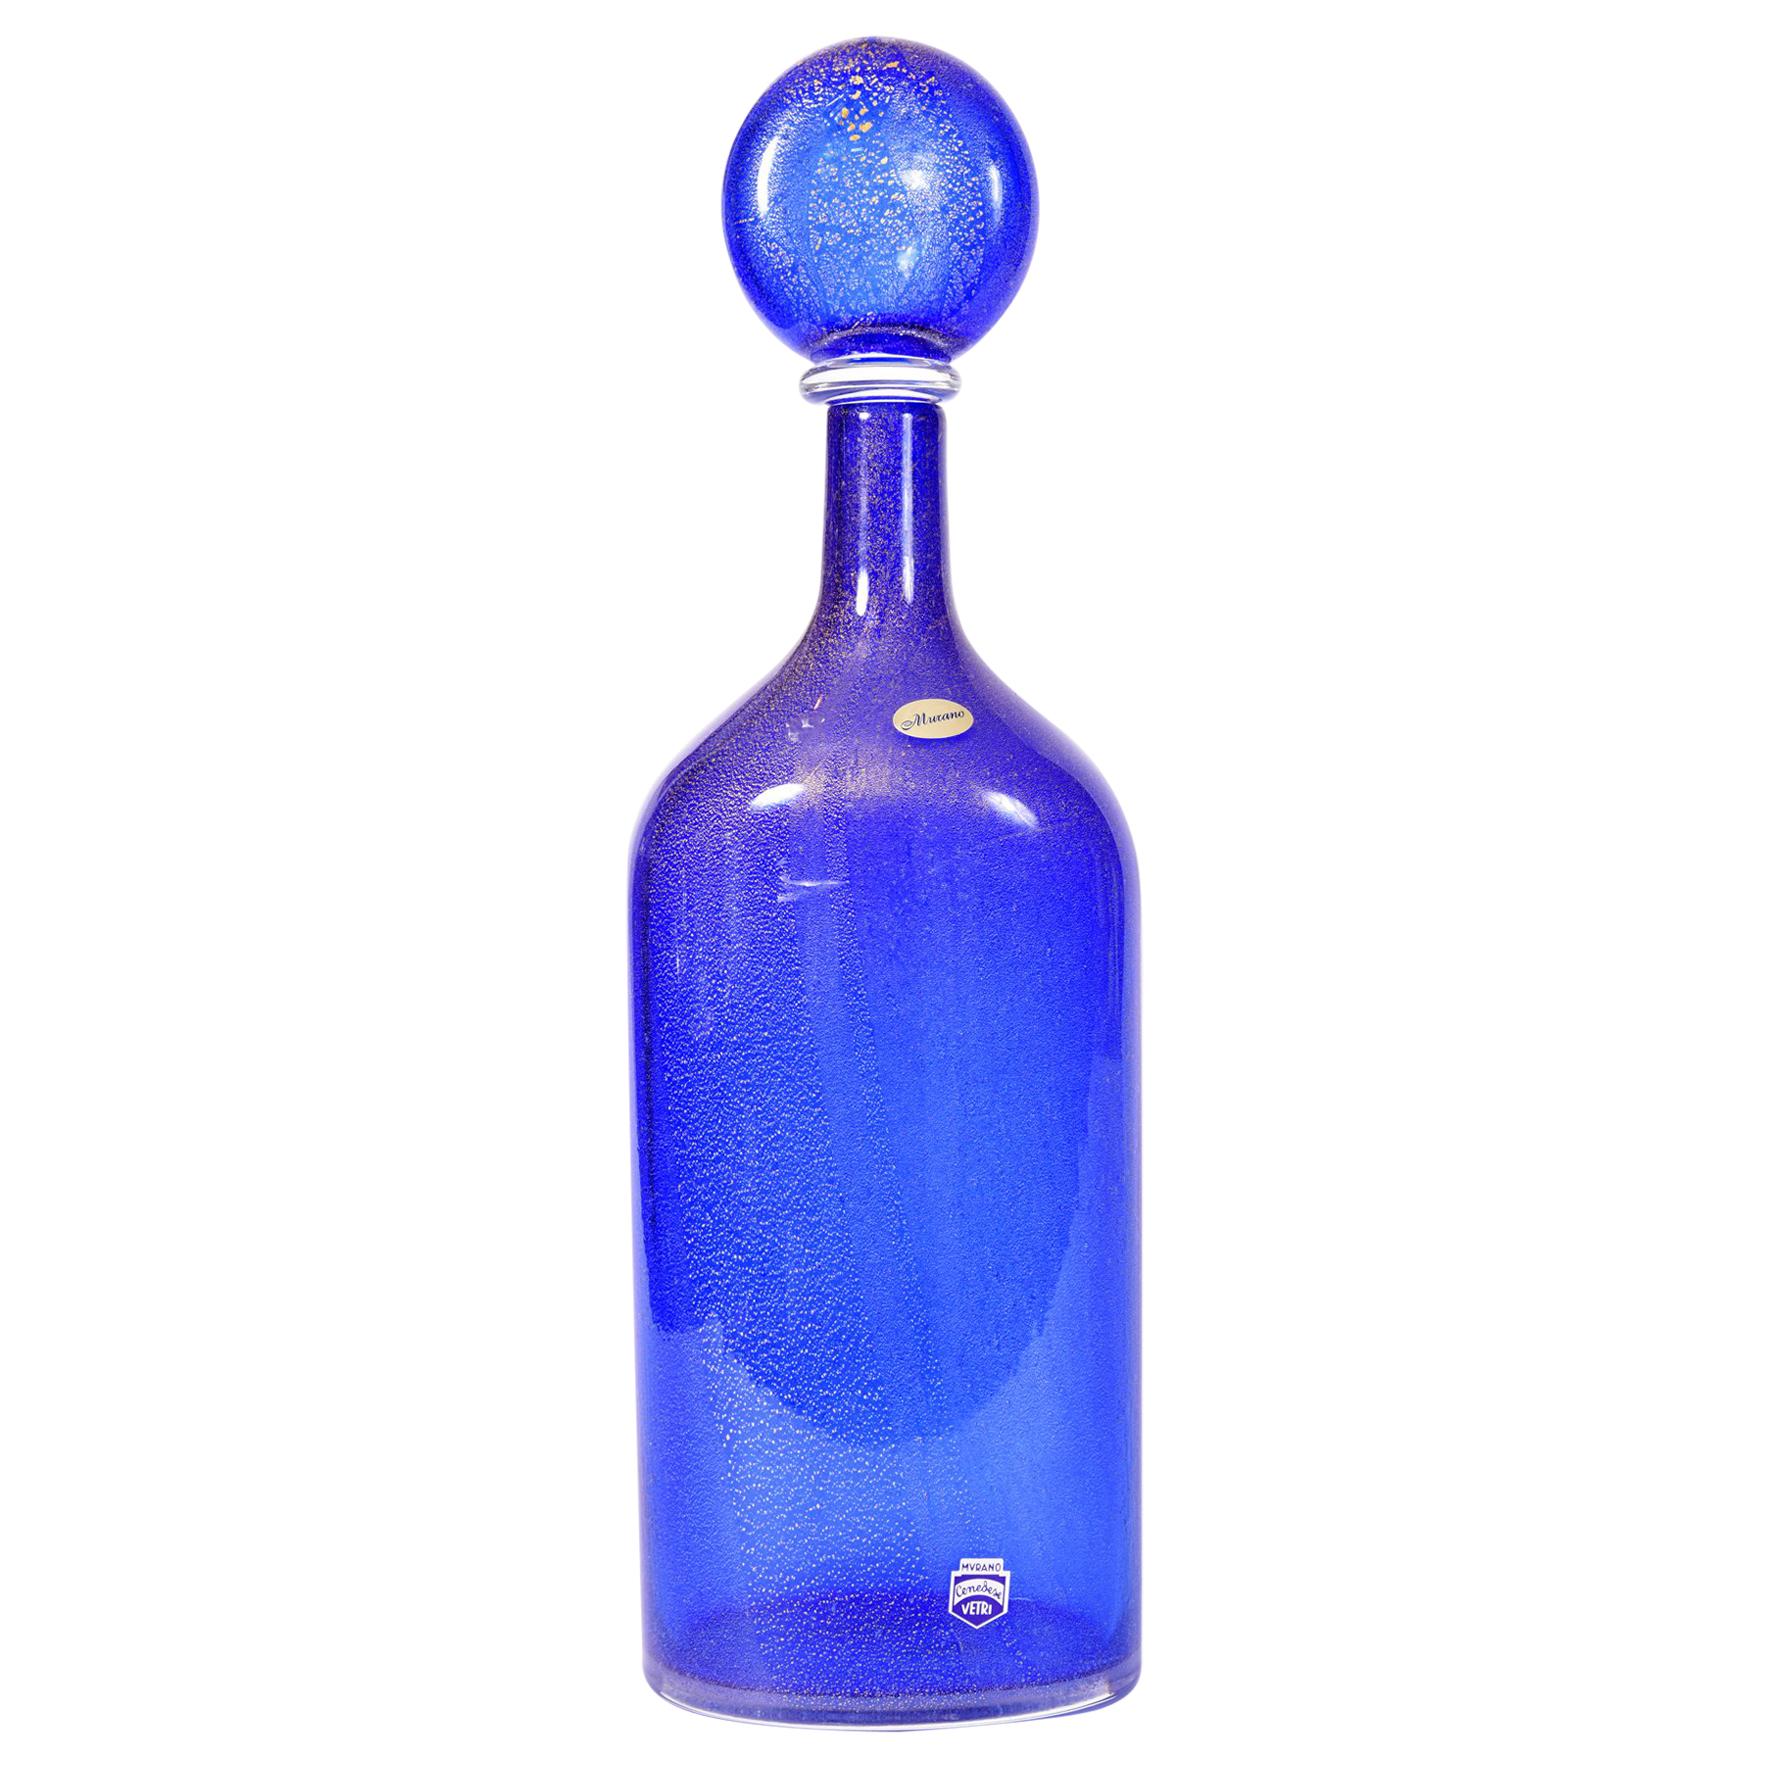 Cobalt Blue Murano Glass Decanter